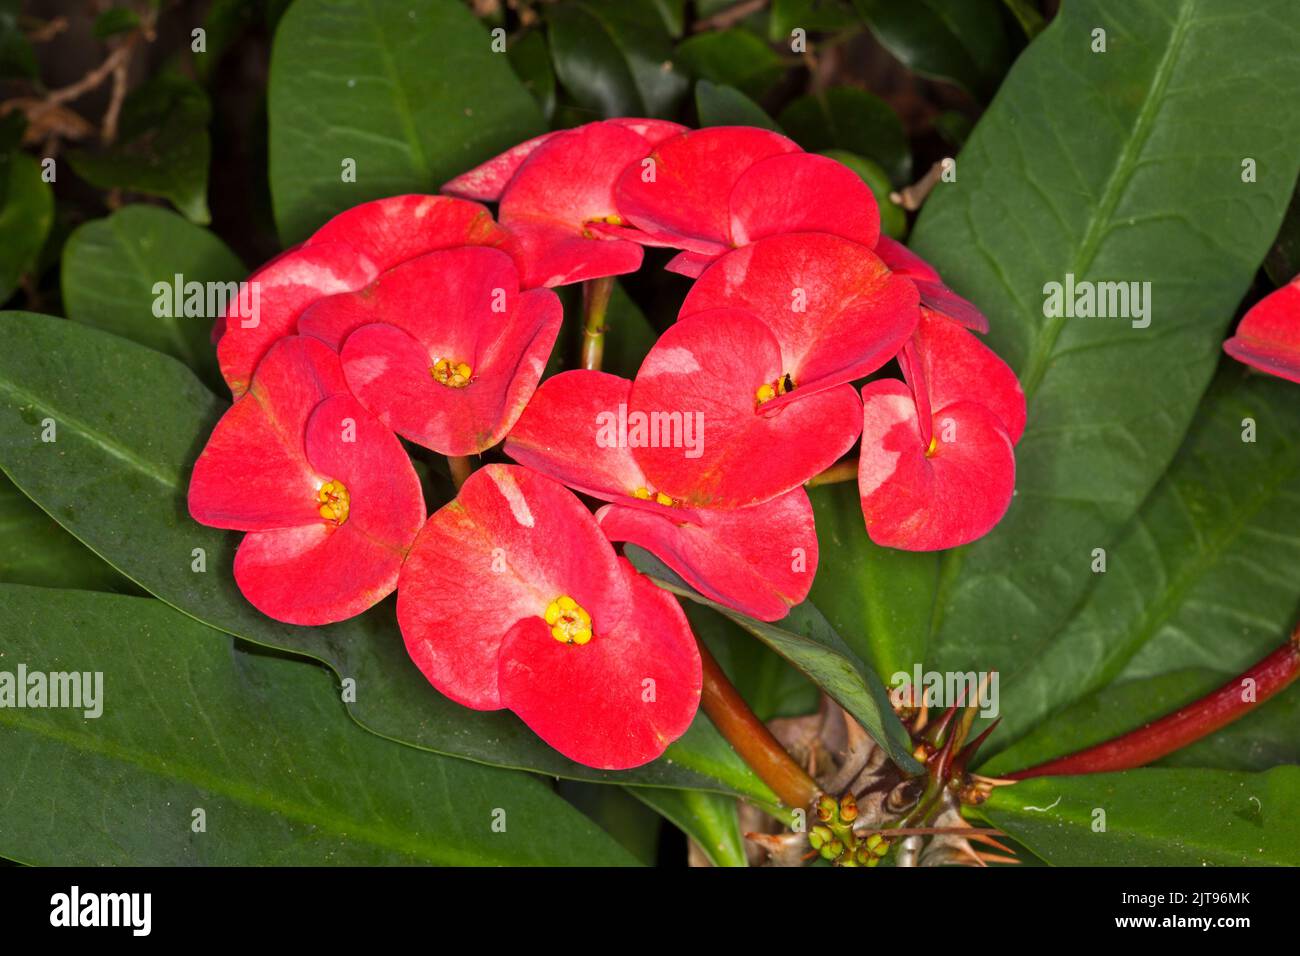 Racimo de grandes flores rojas brillantes de Euphorbia milii, colección Rancho, suculenta espinosa tolerante a la sequía, sobre un fondo de hojas verdes Foto de stock